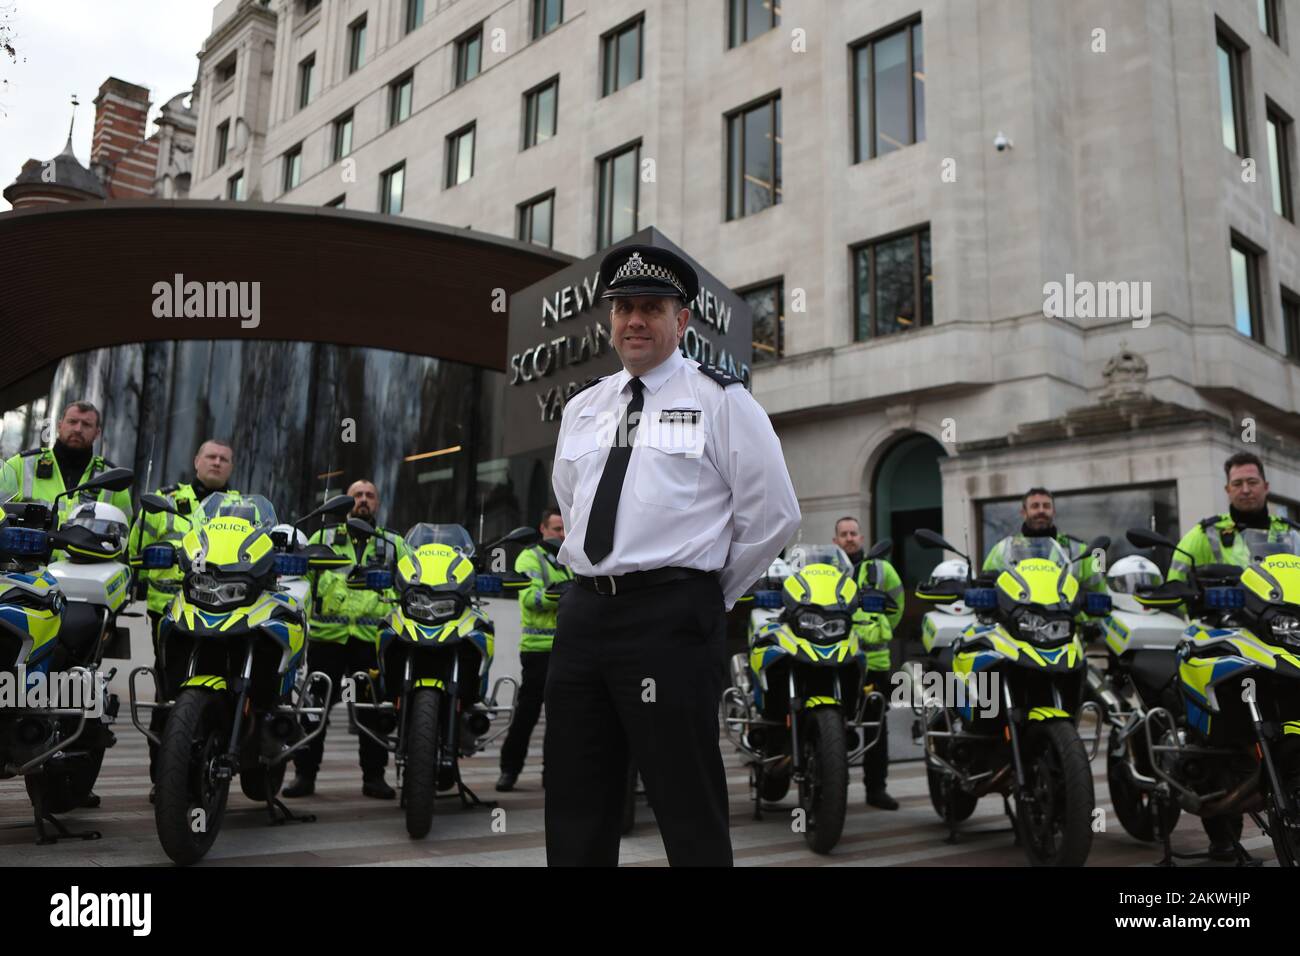 Chief Inspector Jim Corbett und andere Polizisten aus der Metropolitan Police stehen hinter der neue Motorräder, die für Ihre Task Force bei New Scotland Yard, London erworben wurden. Stockfoto